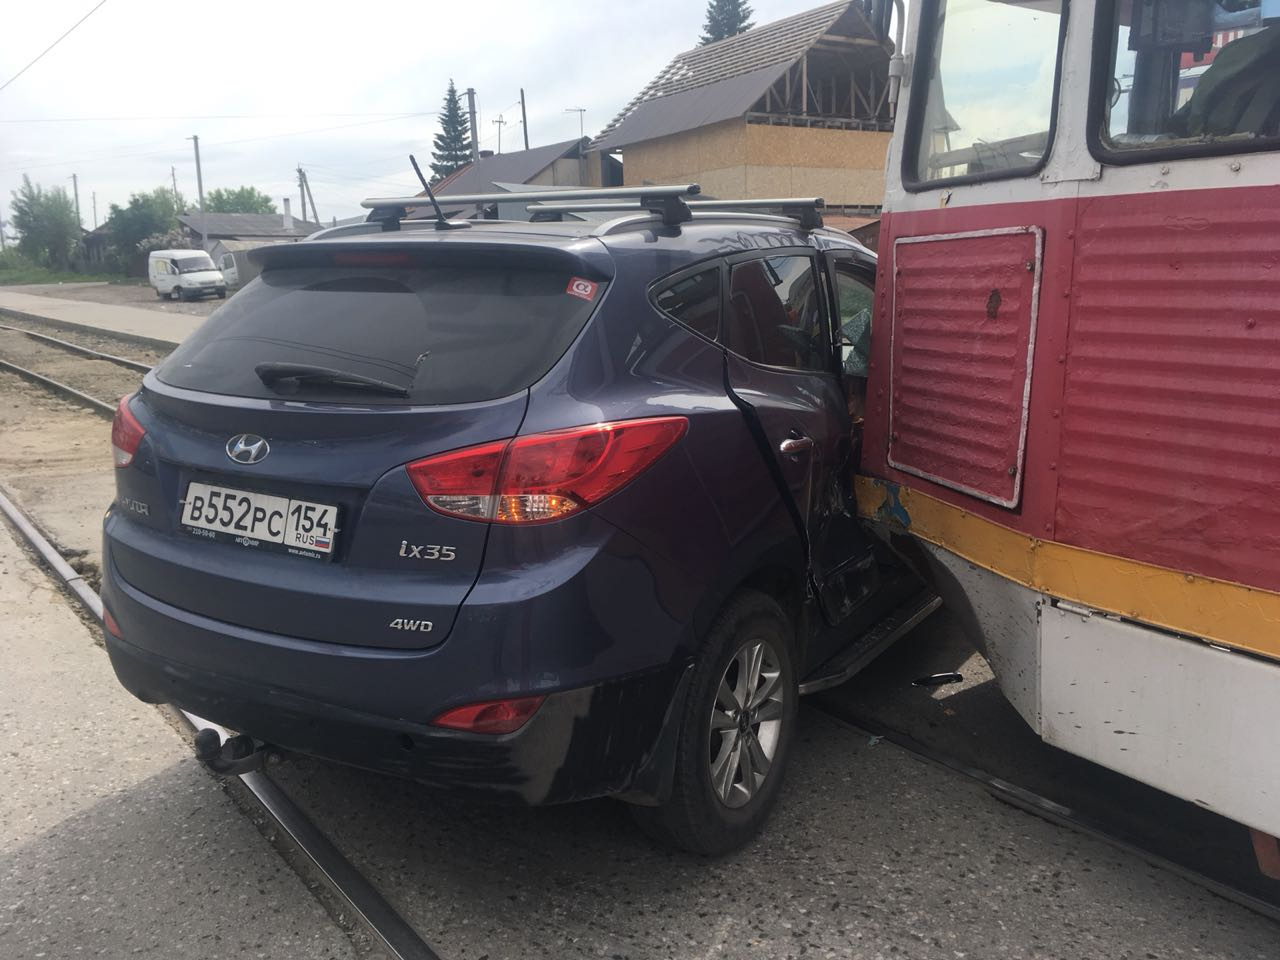 Авария случилась в 16:00, трамвай и автомобиль ехали по улице Троллейной